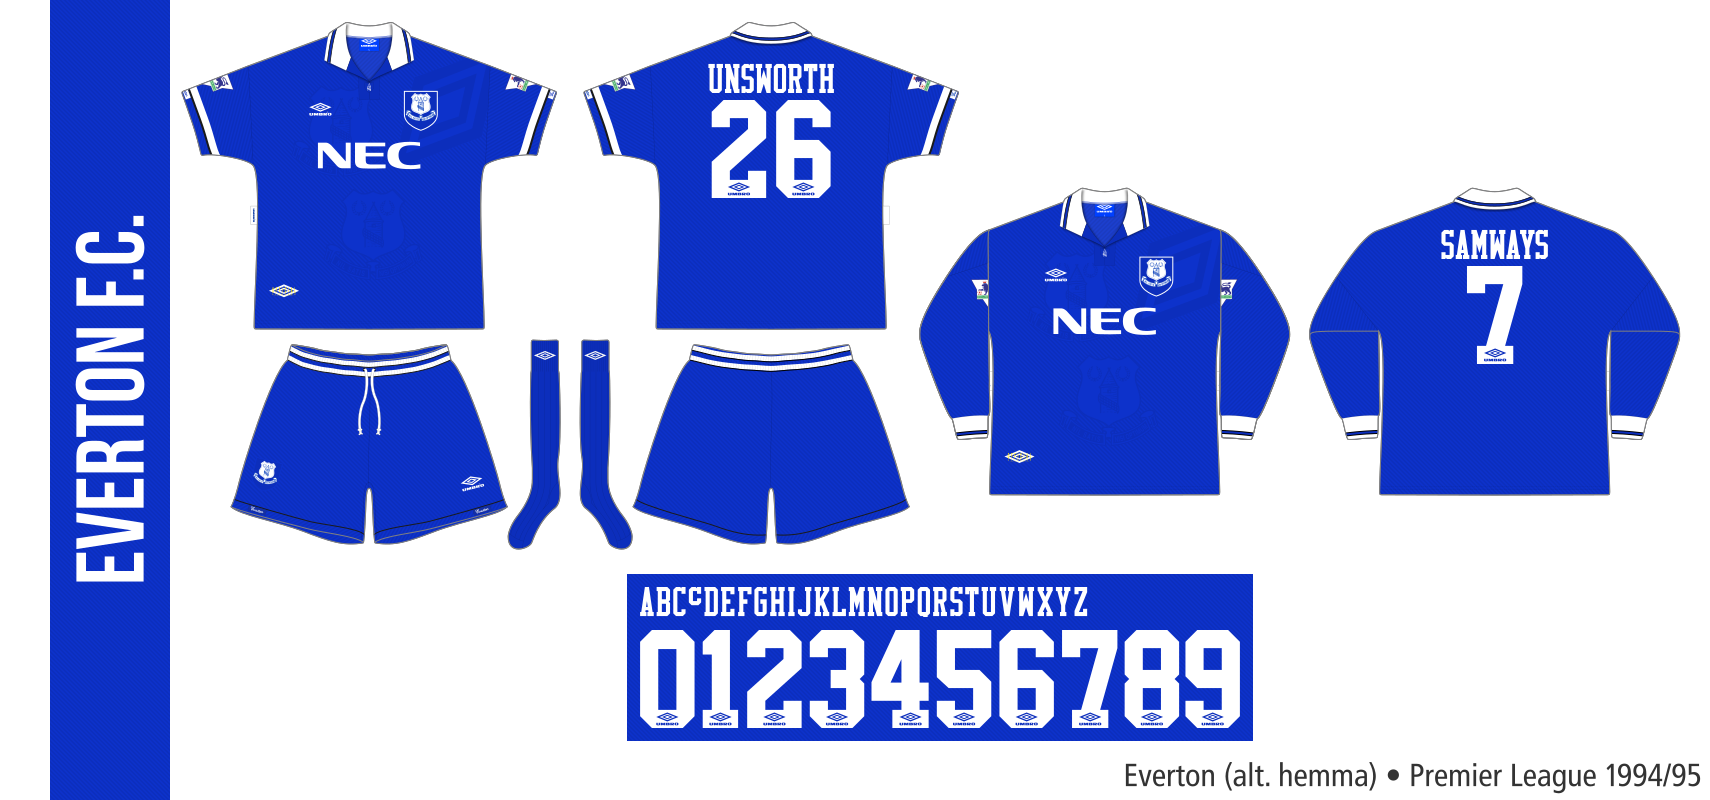 Everton 1994/95 (alternativ hemma)